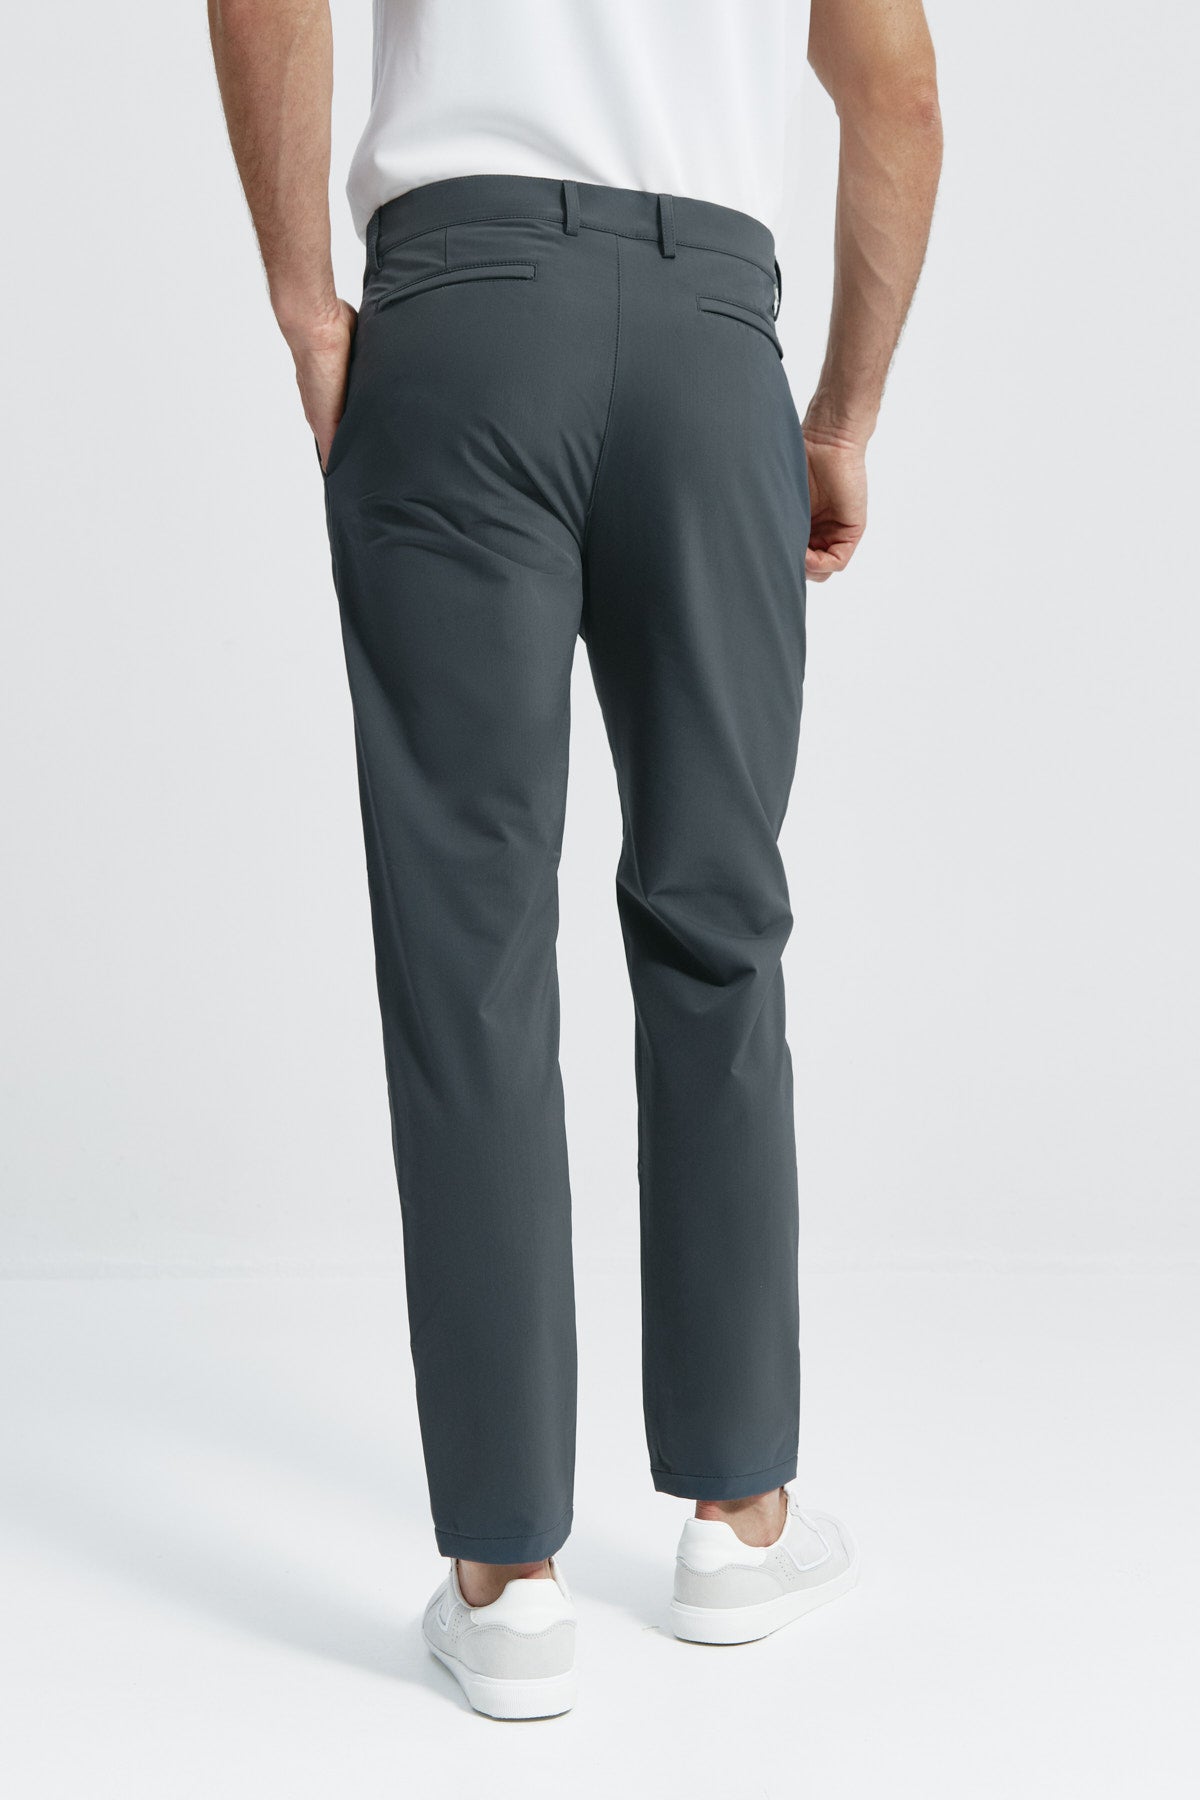 Pantalón para hombre gris: Pantalón chino regular gris para hombre con tecnología termorreguladora Coolmax. Foto de espalda.